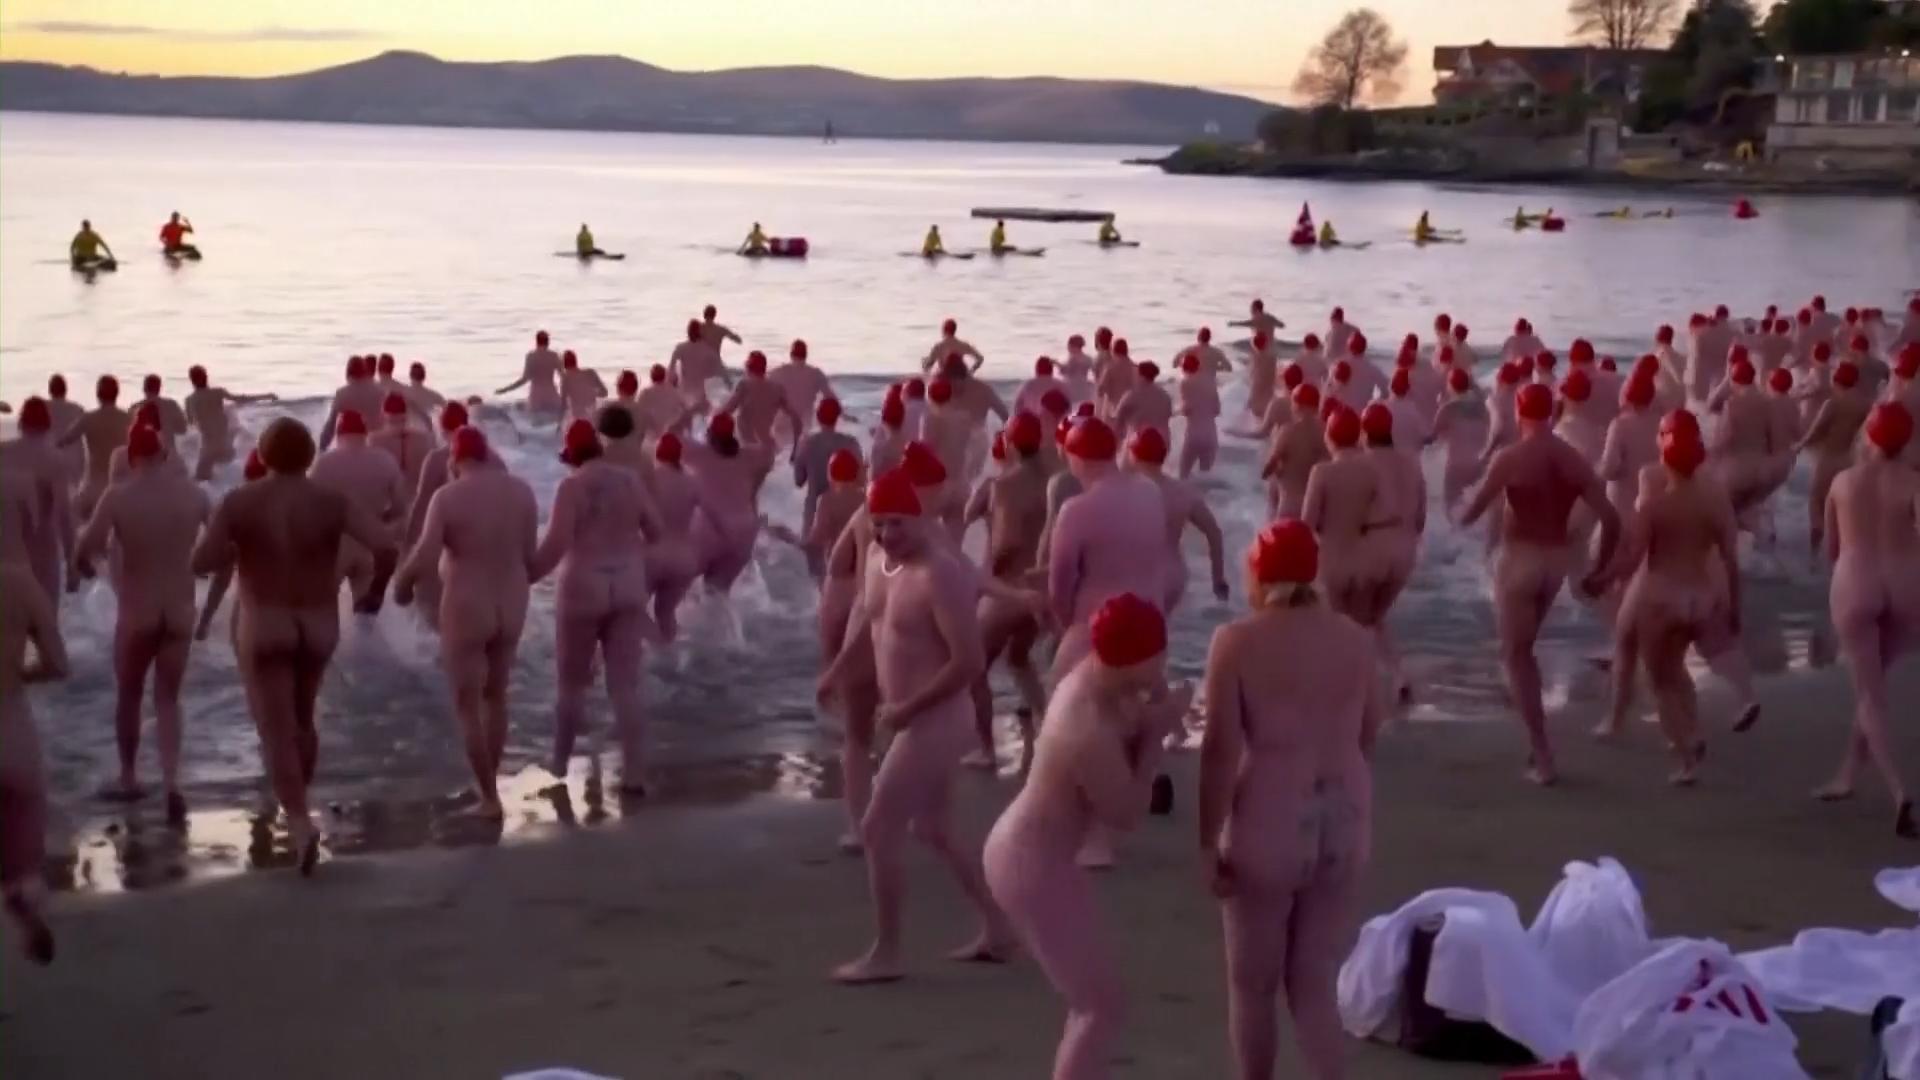 Tausende Nacktschwimmer stürmen ins Wasser Australier feiern